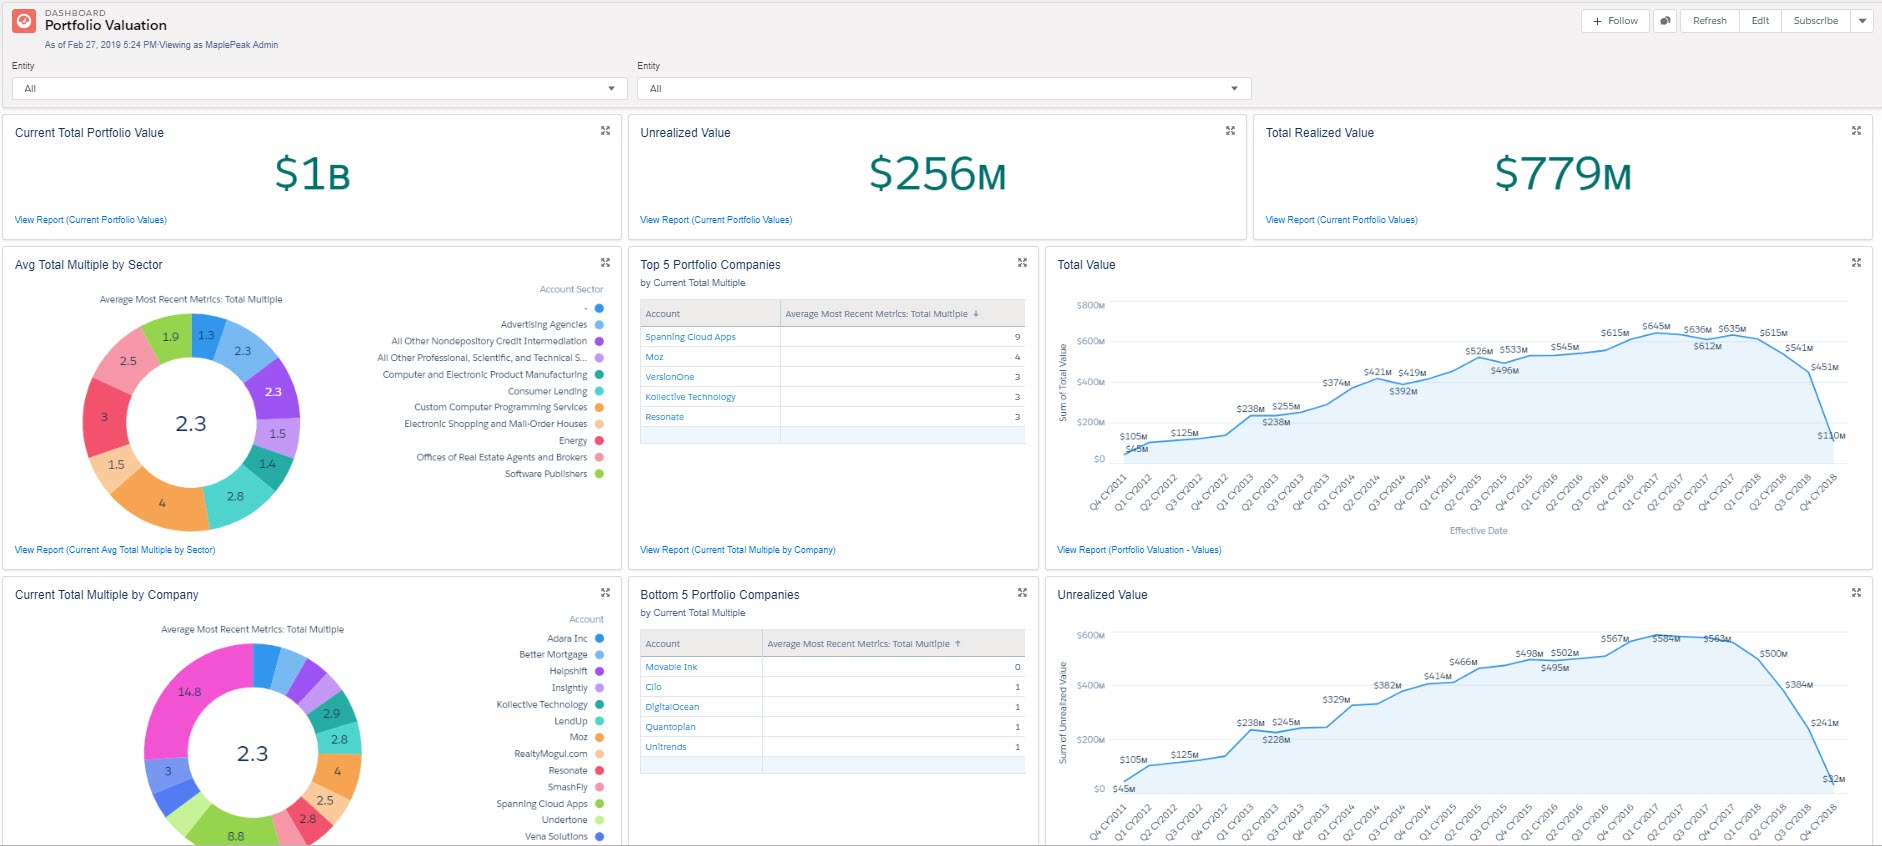 AIM portfolio valuation dashboard screenshot